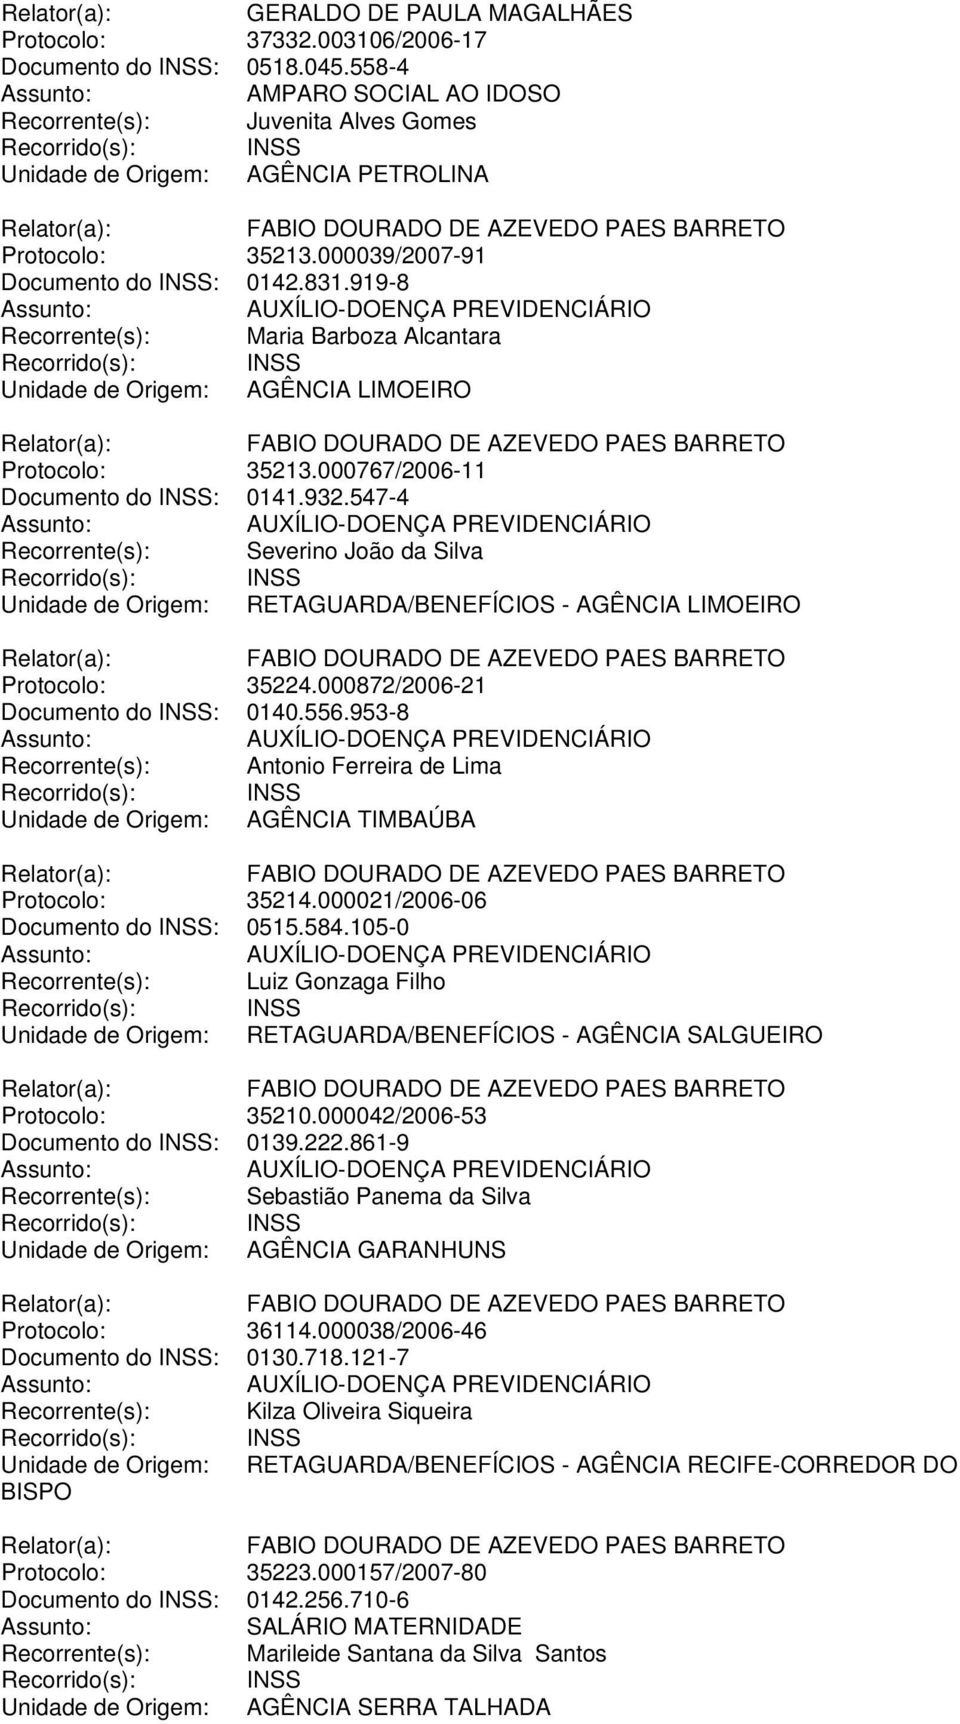 547-4 Recorrente(s): Severino João da Silva Unidade de Origem: RETAGUARDA/BENEFÍCIOS - AGÊNCIA LIMOEIRO Protocolo: 35224.000872/2006-21 Documento do INSS: 0140.556.